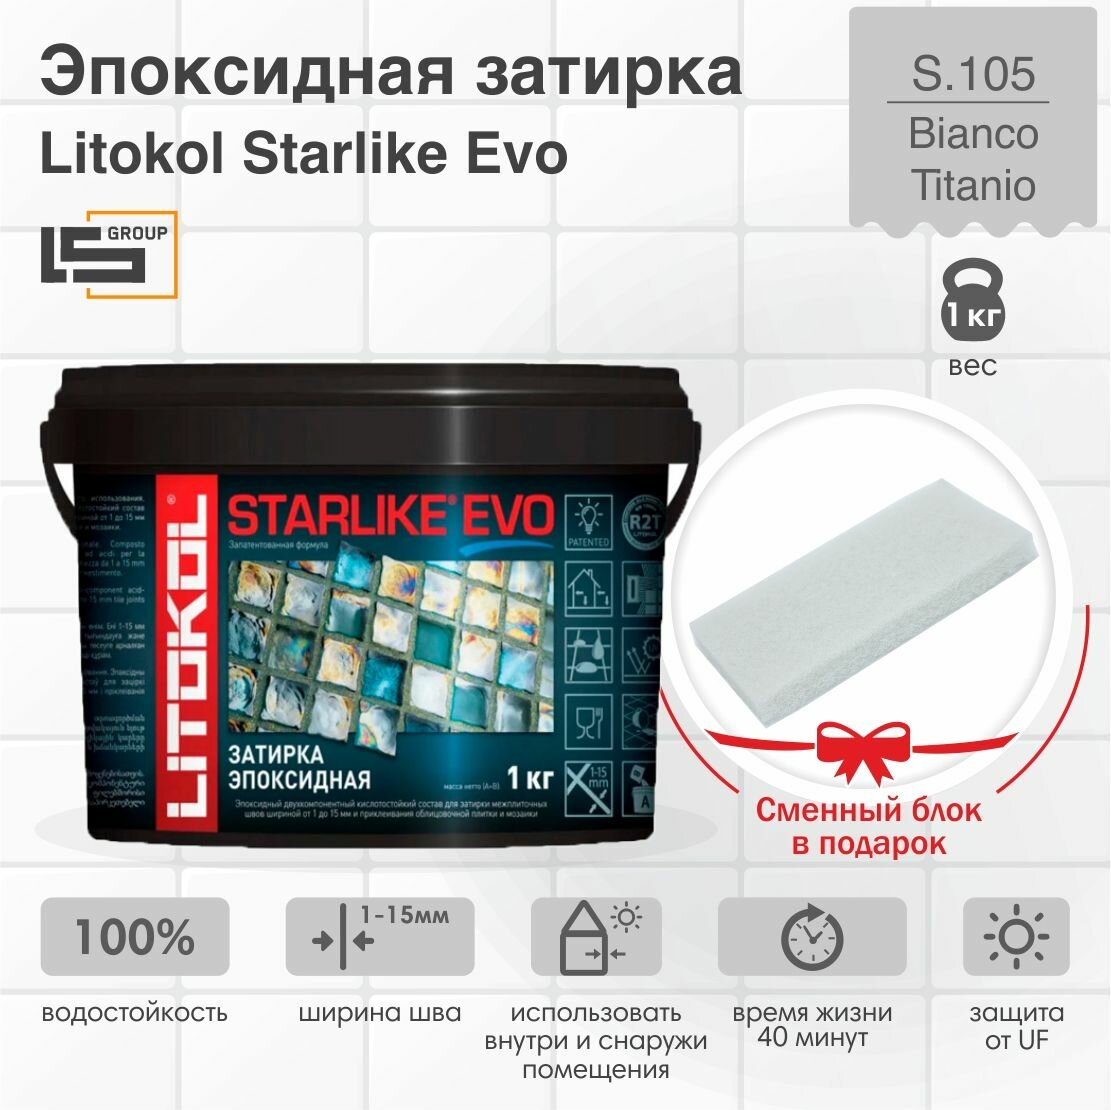 Затирка для плитки эпоксидная LITOKOL STARLIKE EVO (старлайк ЭВО) S.105 BIANCO TITANIO, 1кг + Сменный блок в подарок